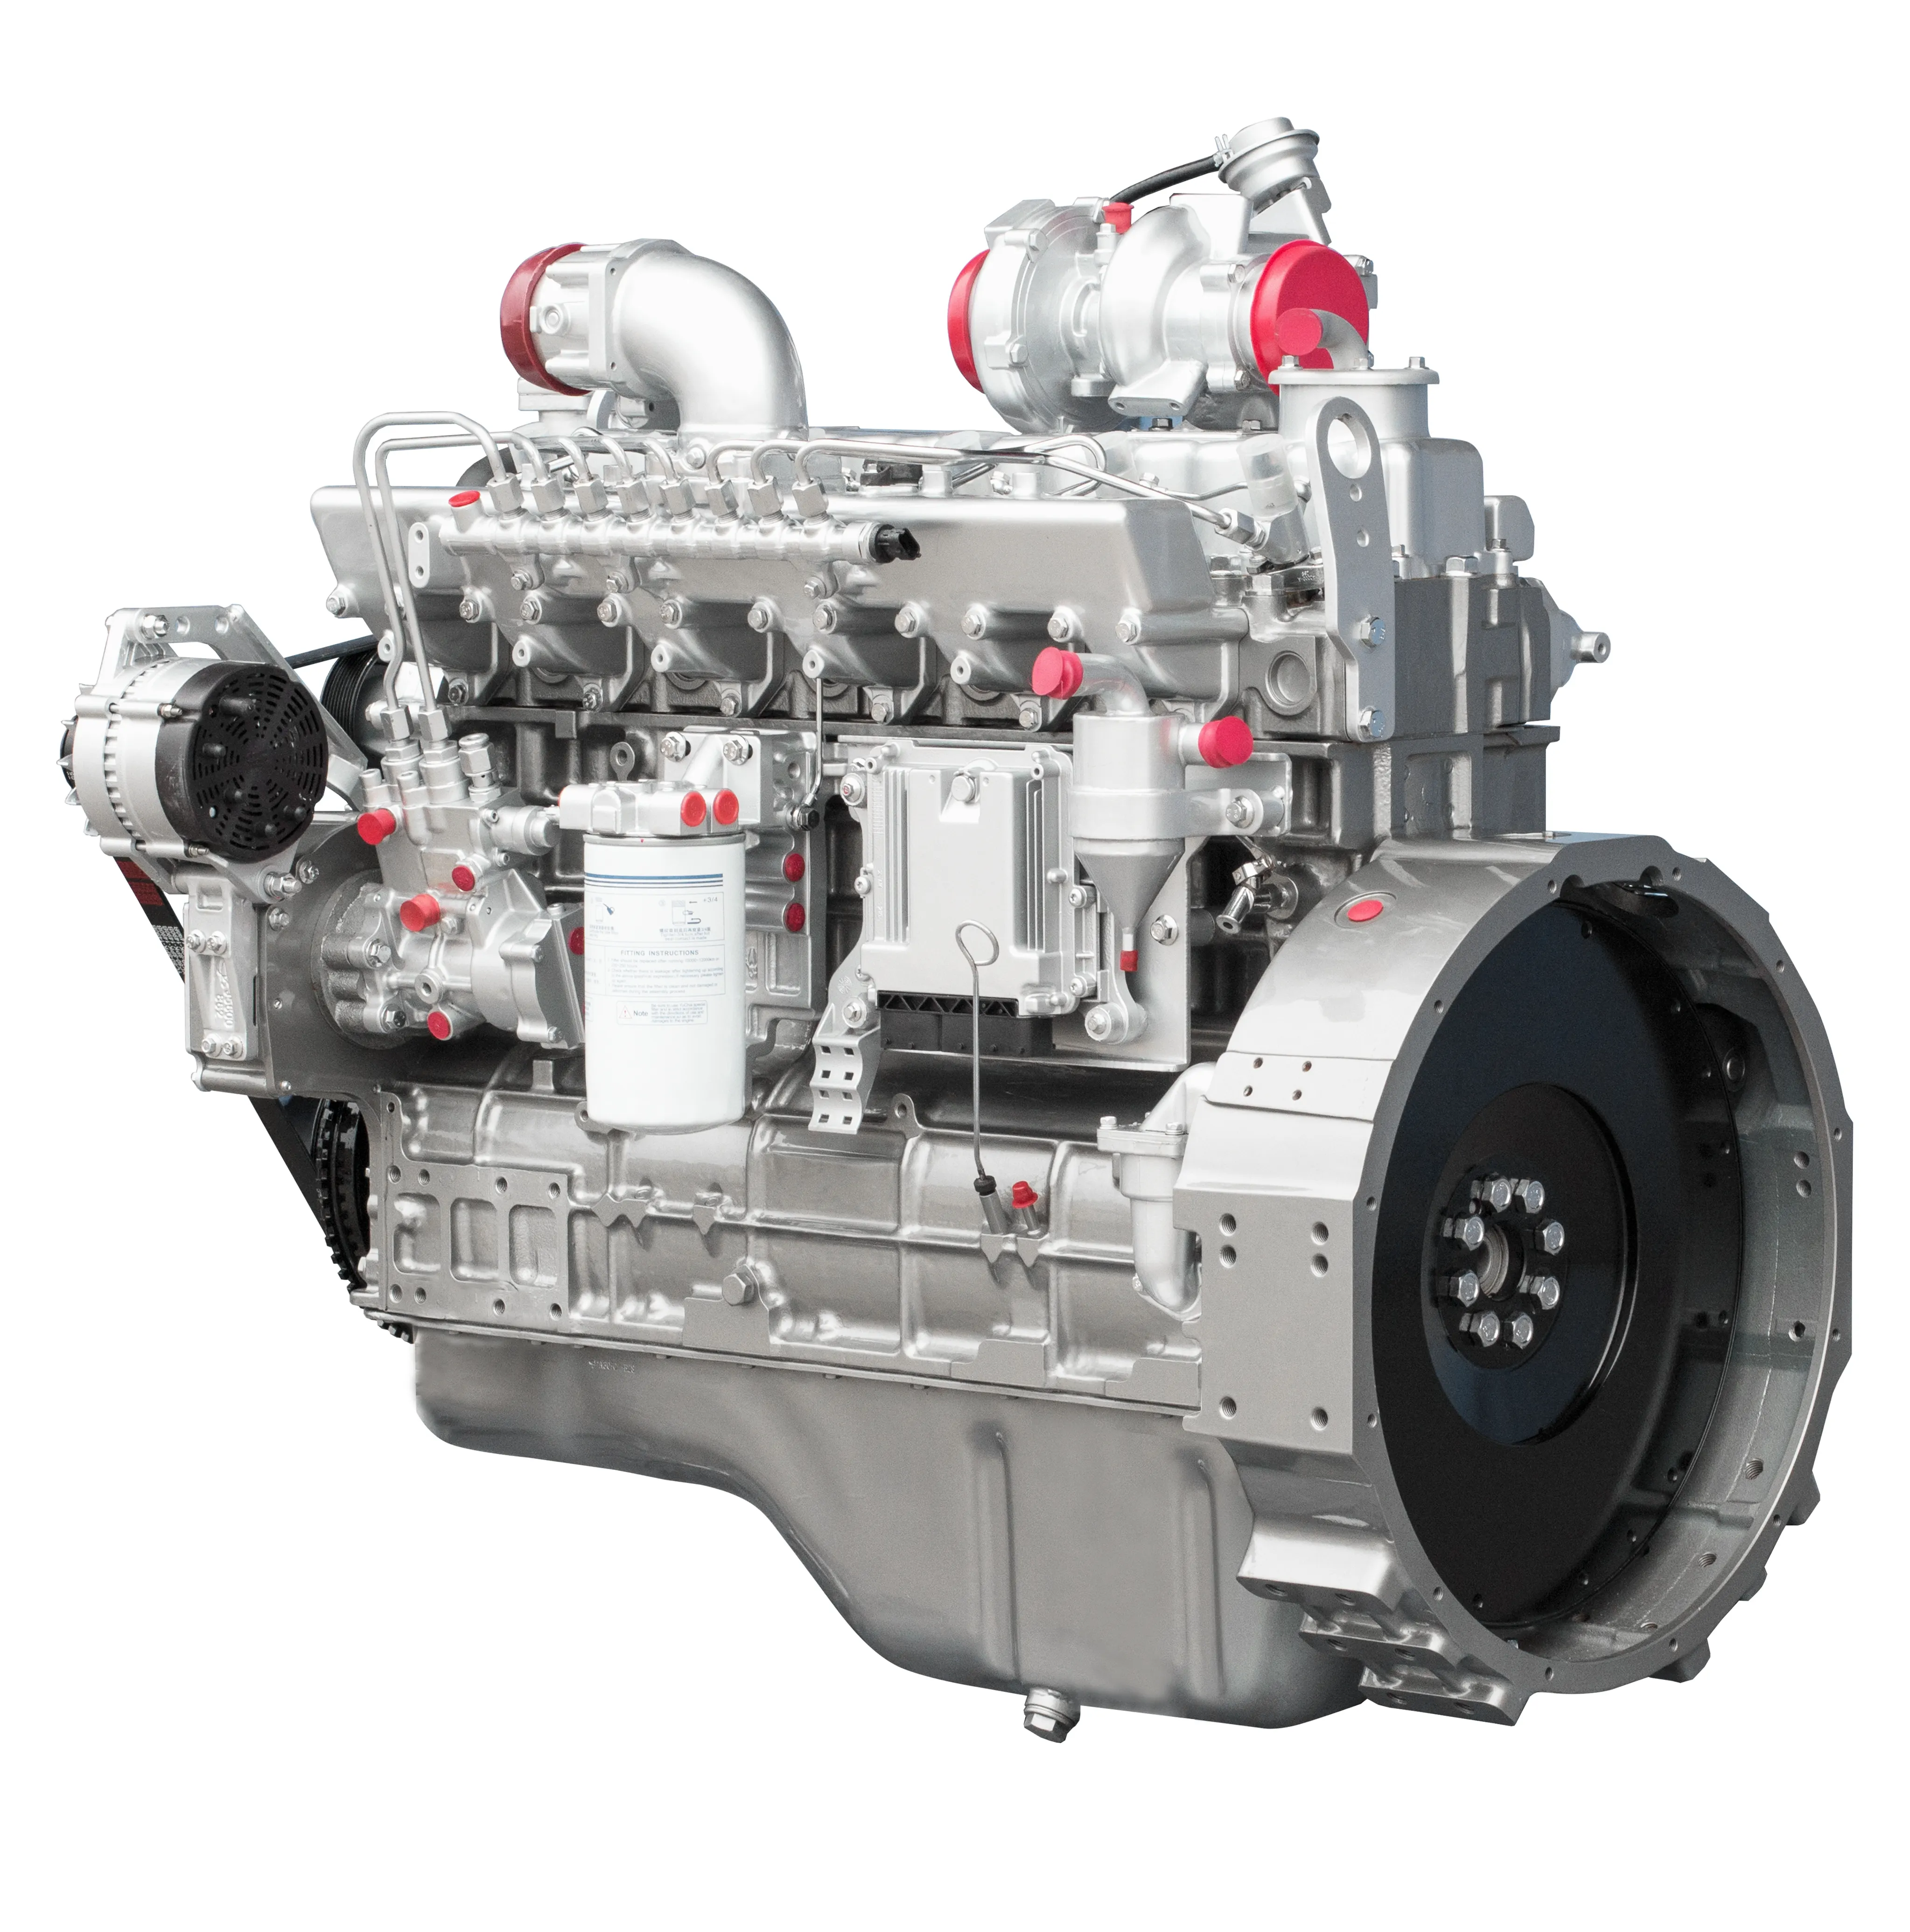 Yuchai YC6MK यूरो 3 उत्सर्जन मध्यम और भारी शुल्क डीजल इंजन के साथ उच्च शक्ति उच्च विश्वसनीयता कम ईंधन की खपत और suf